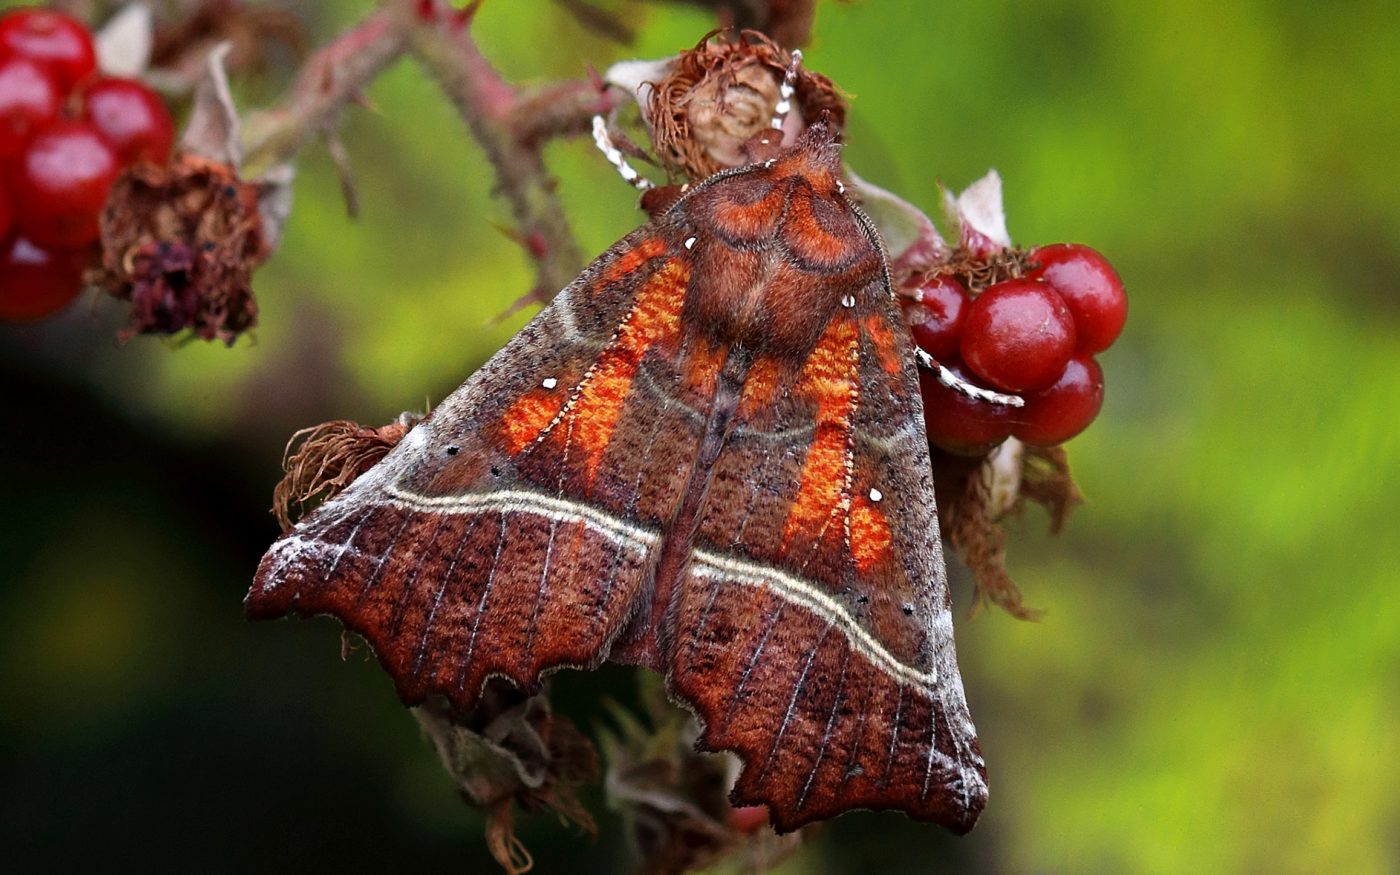 Herald moth, Scoliopteryx libatrix, on blackberries